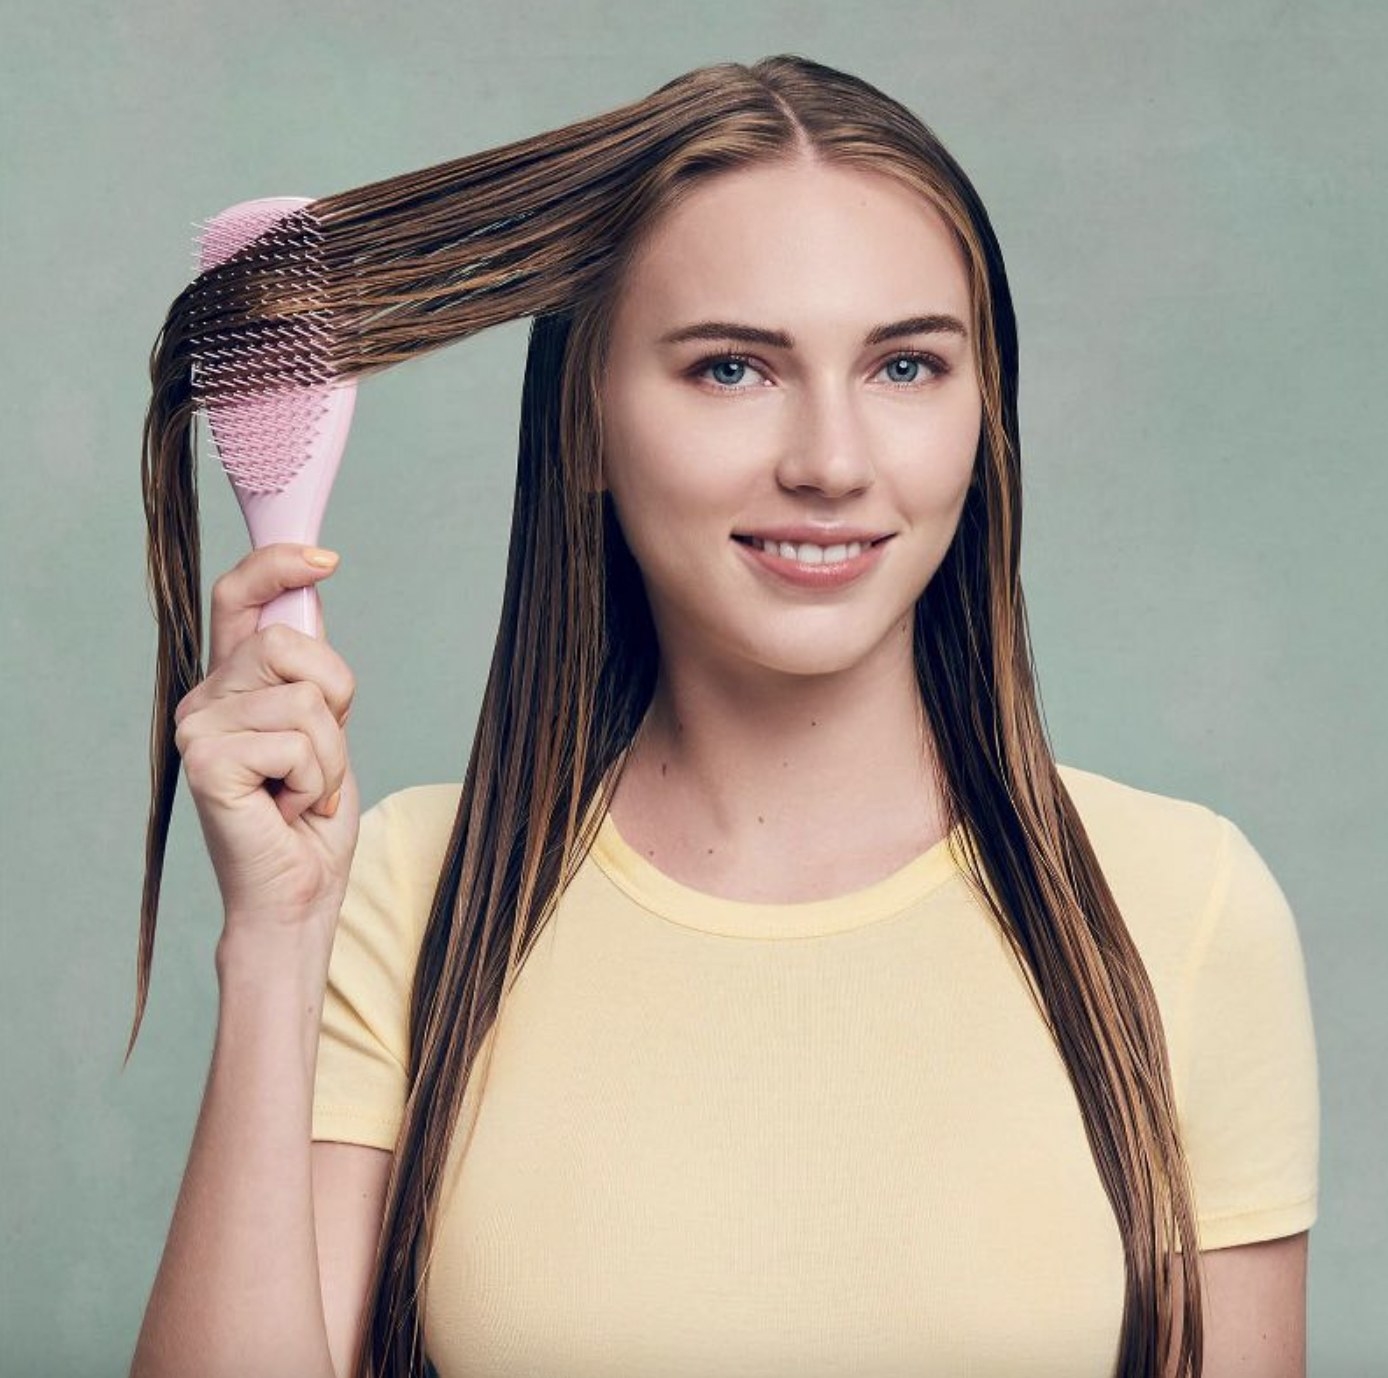 A person using a hair brush to detangle their hair